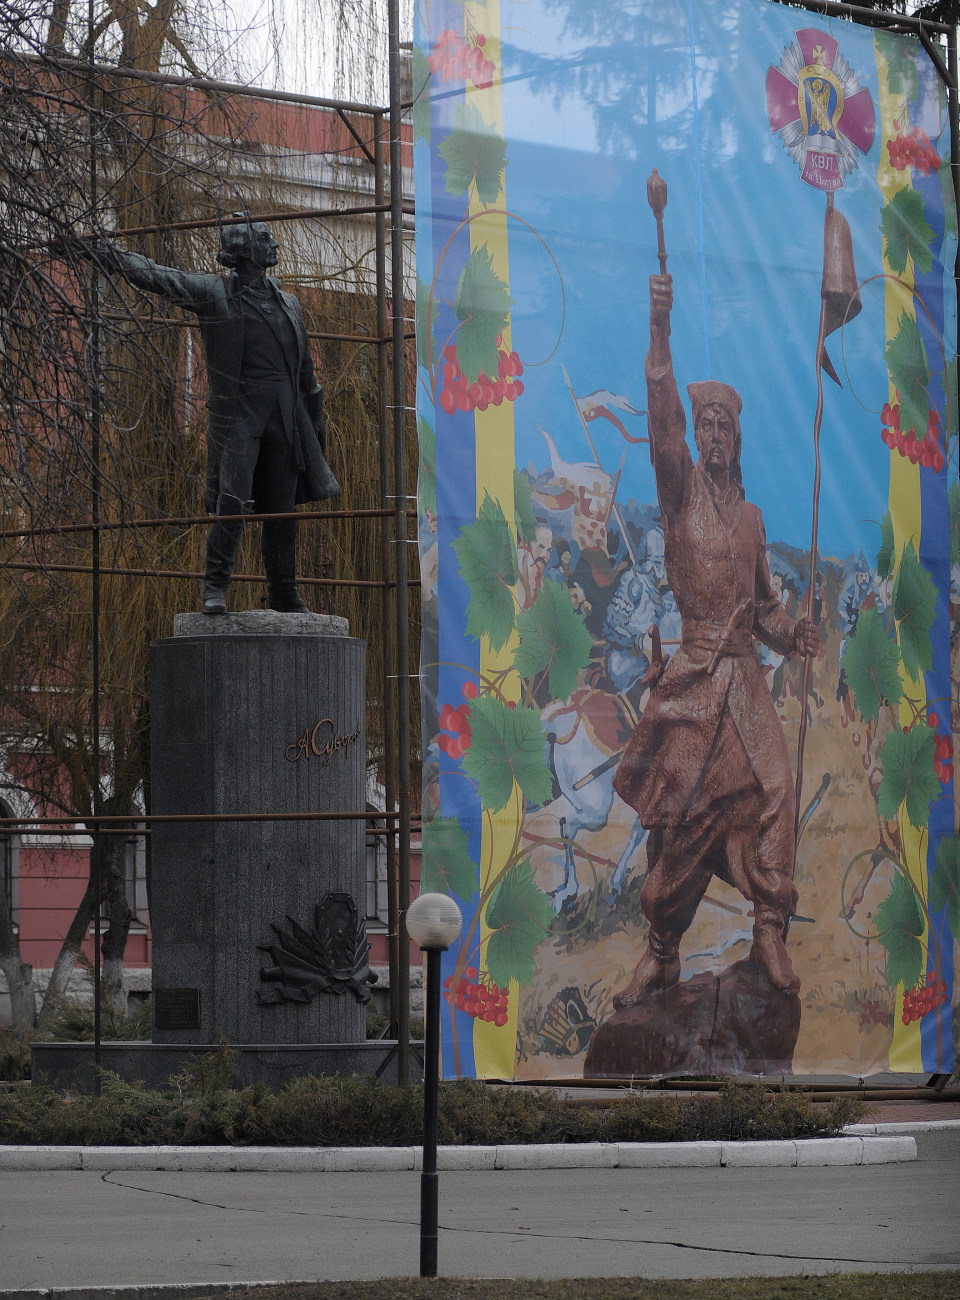 В Киевском военном лицее имени Ивана Богуна намерены демонтировать памятник Александру Суворову